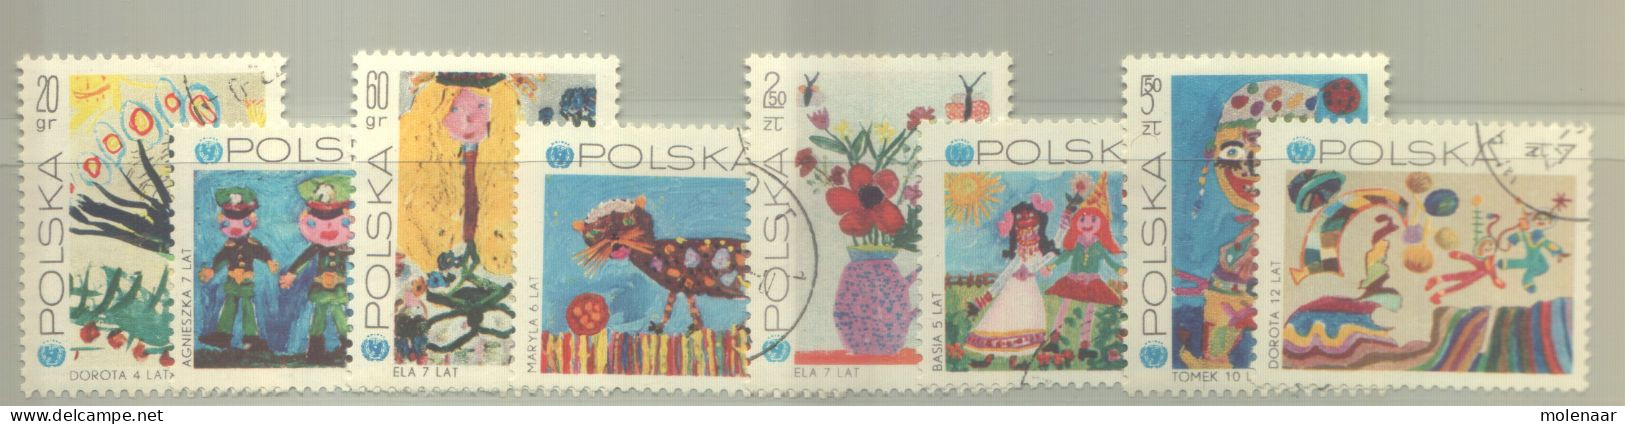 Postzegels > Europa > Polen > 1944-.... Republiek > 1981-90 > Gebruikt 2075-2082 (12193) - Gebruikt